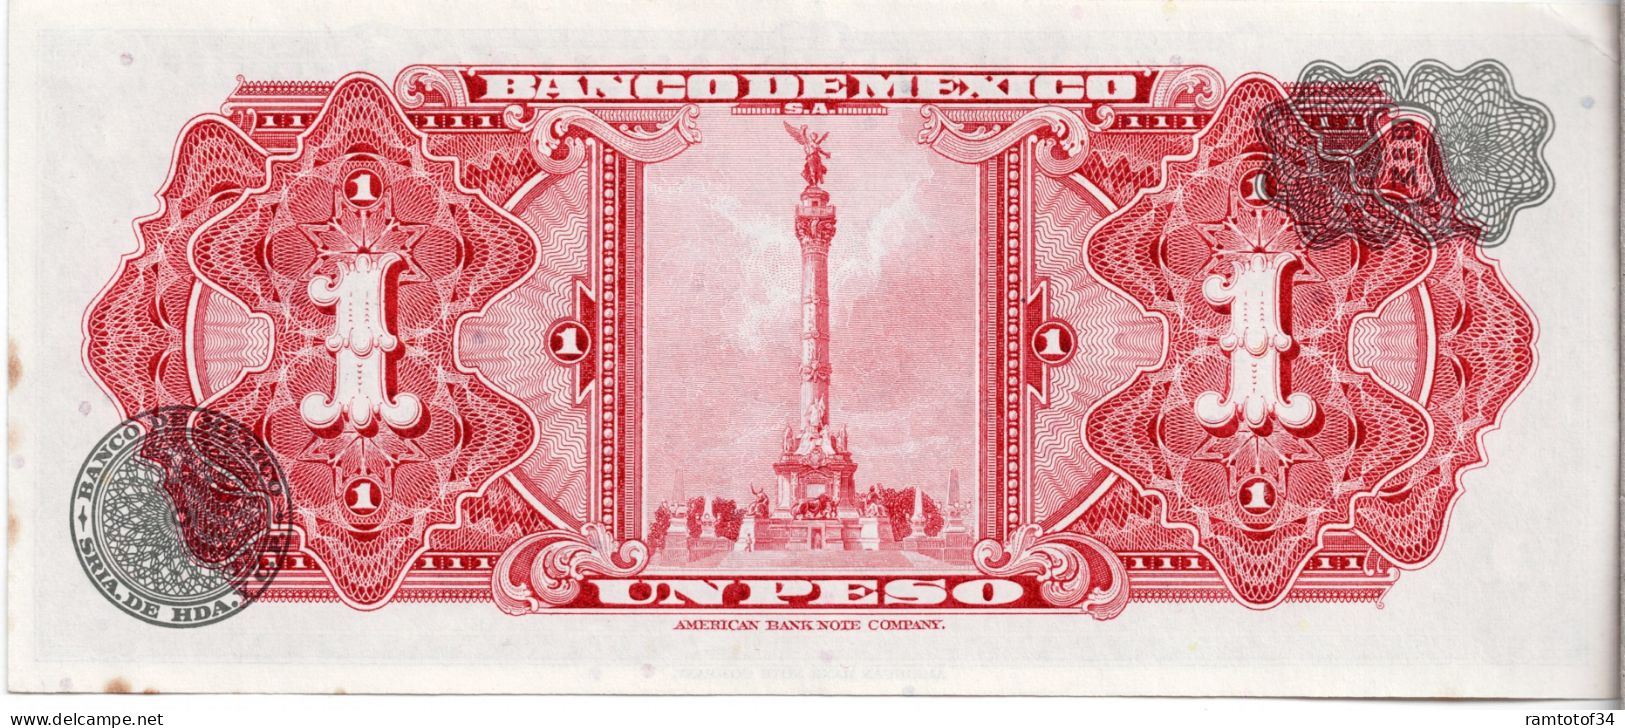 MEXIQUE - 1 Peso 1965 UNC - Mexique